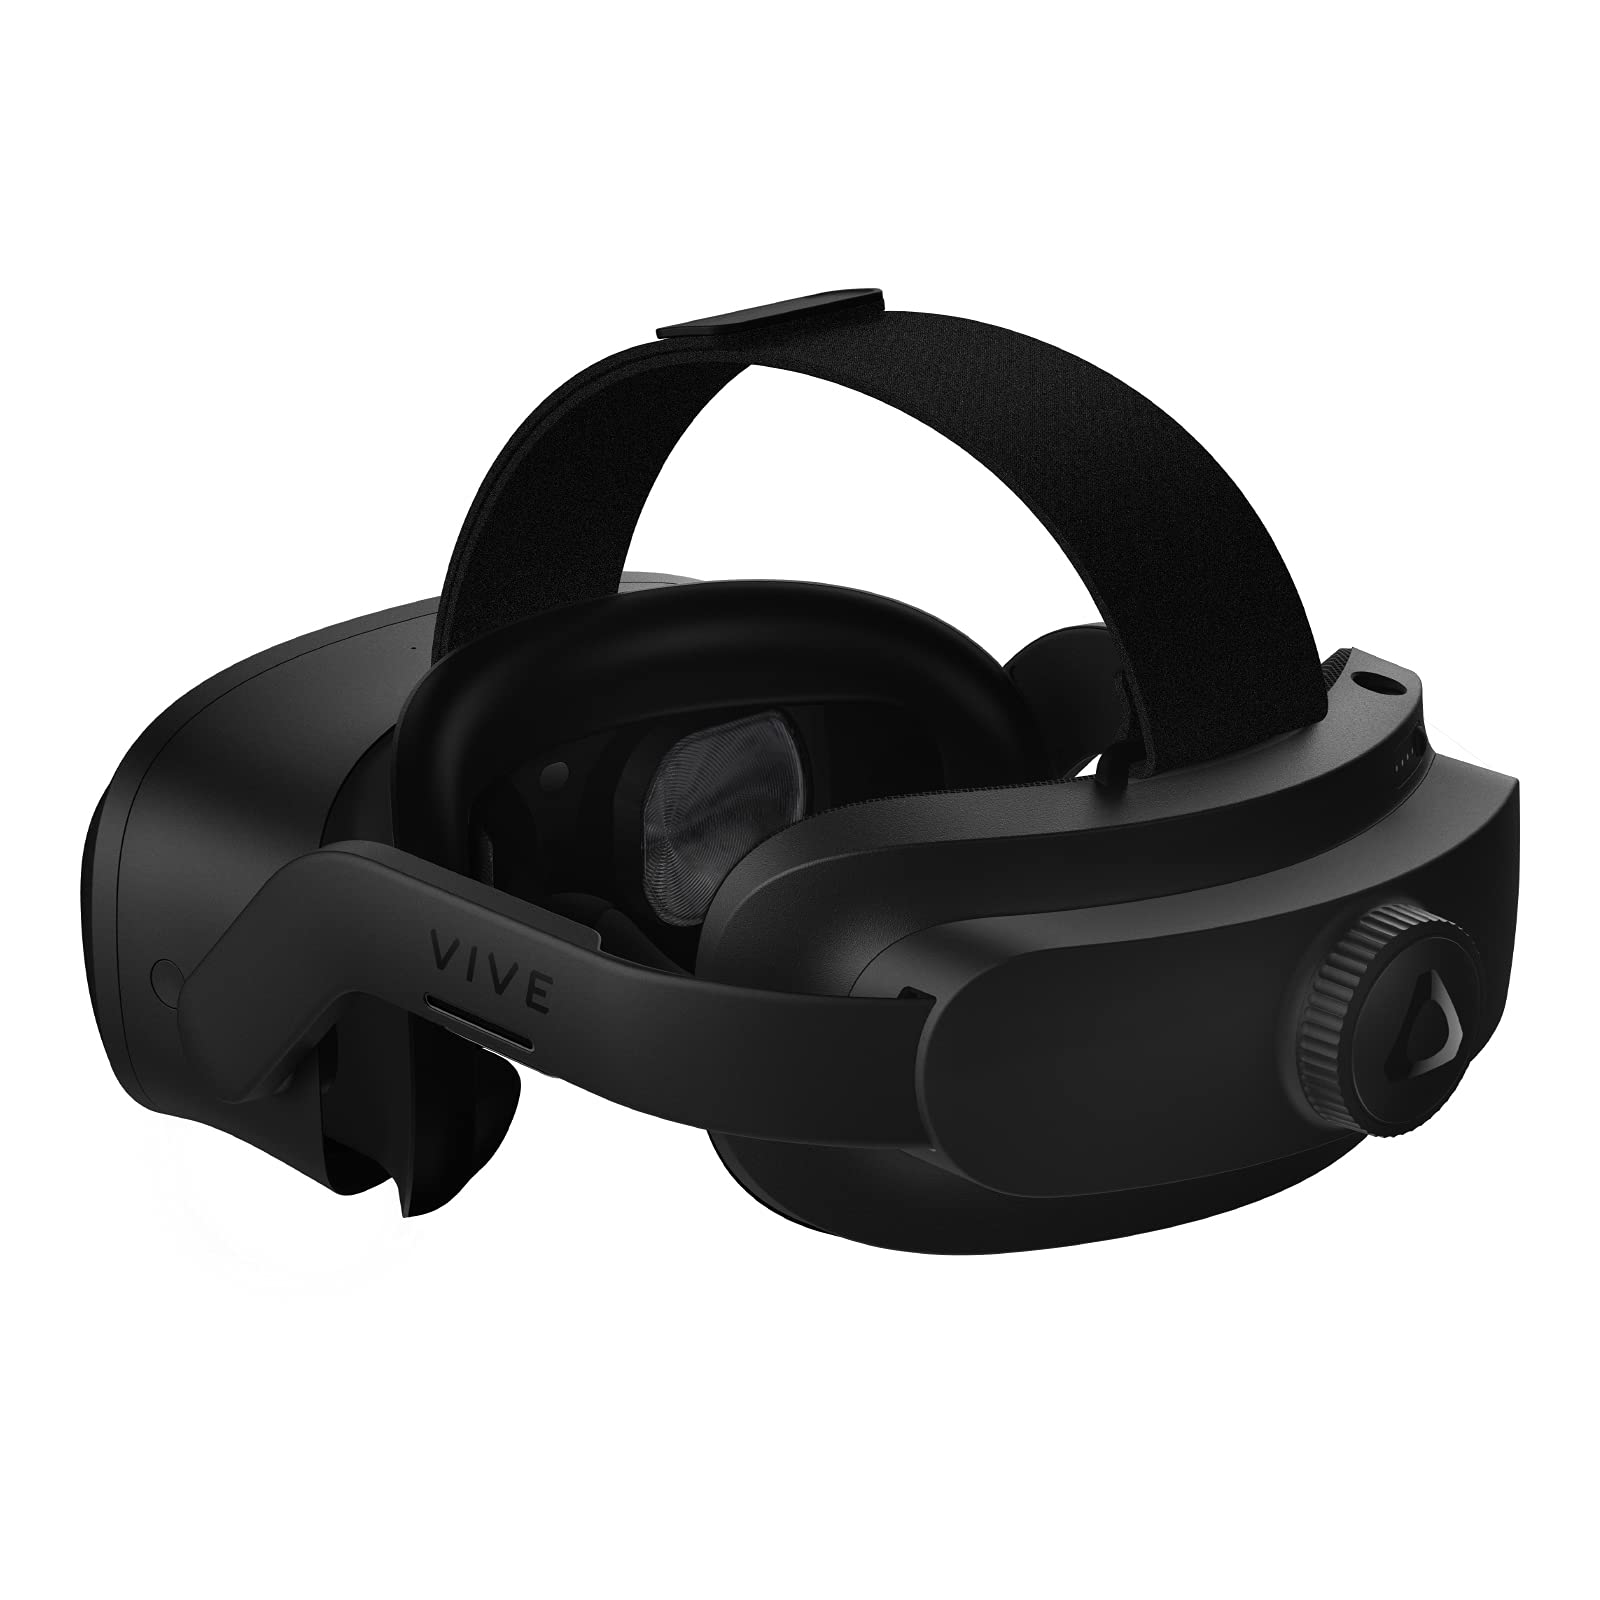 HTC Vive Focus 3 Enterprise Virtual Reality Headset